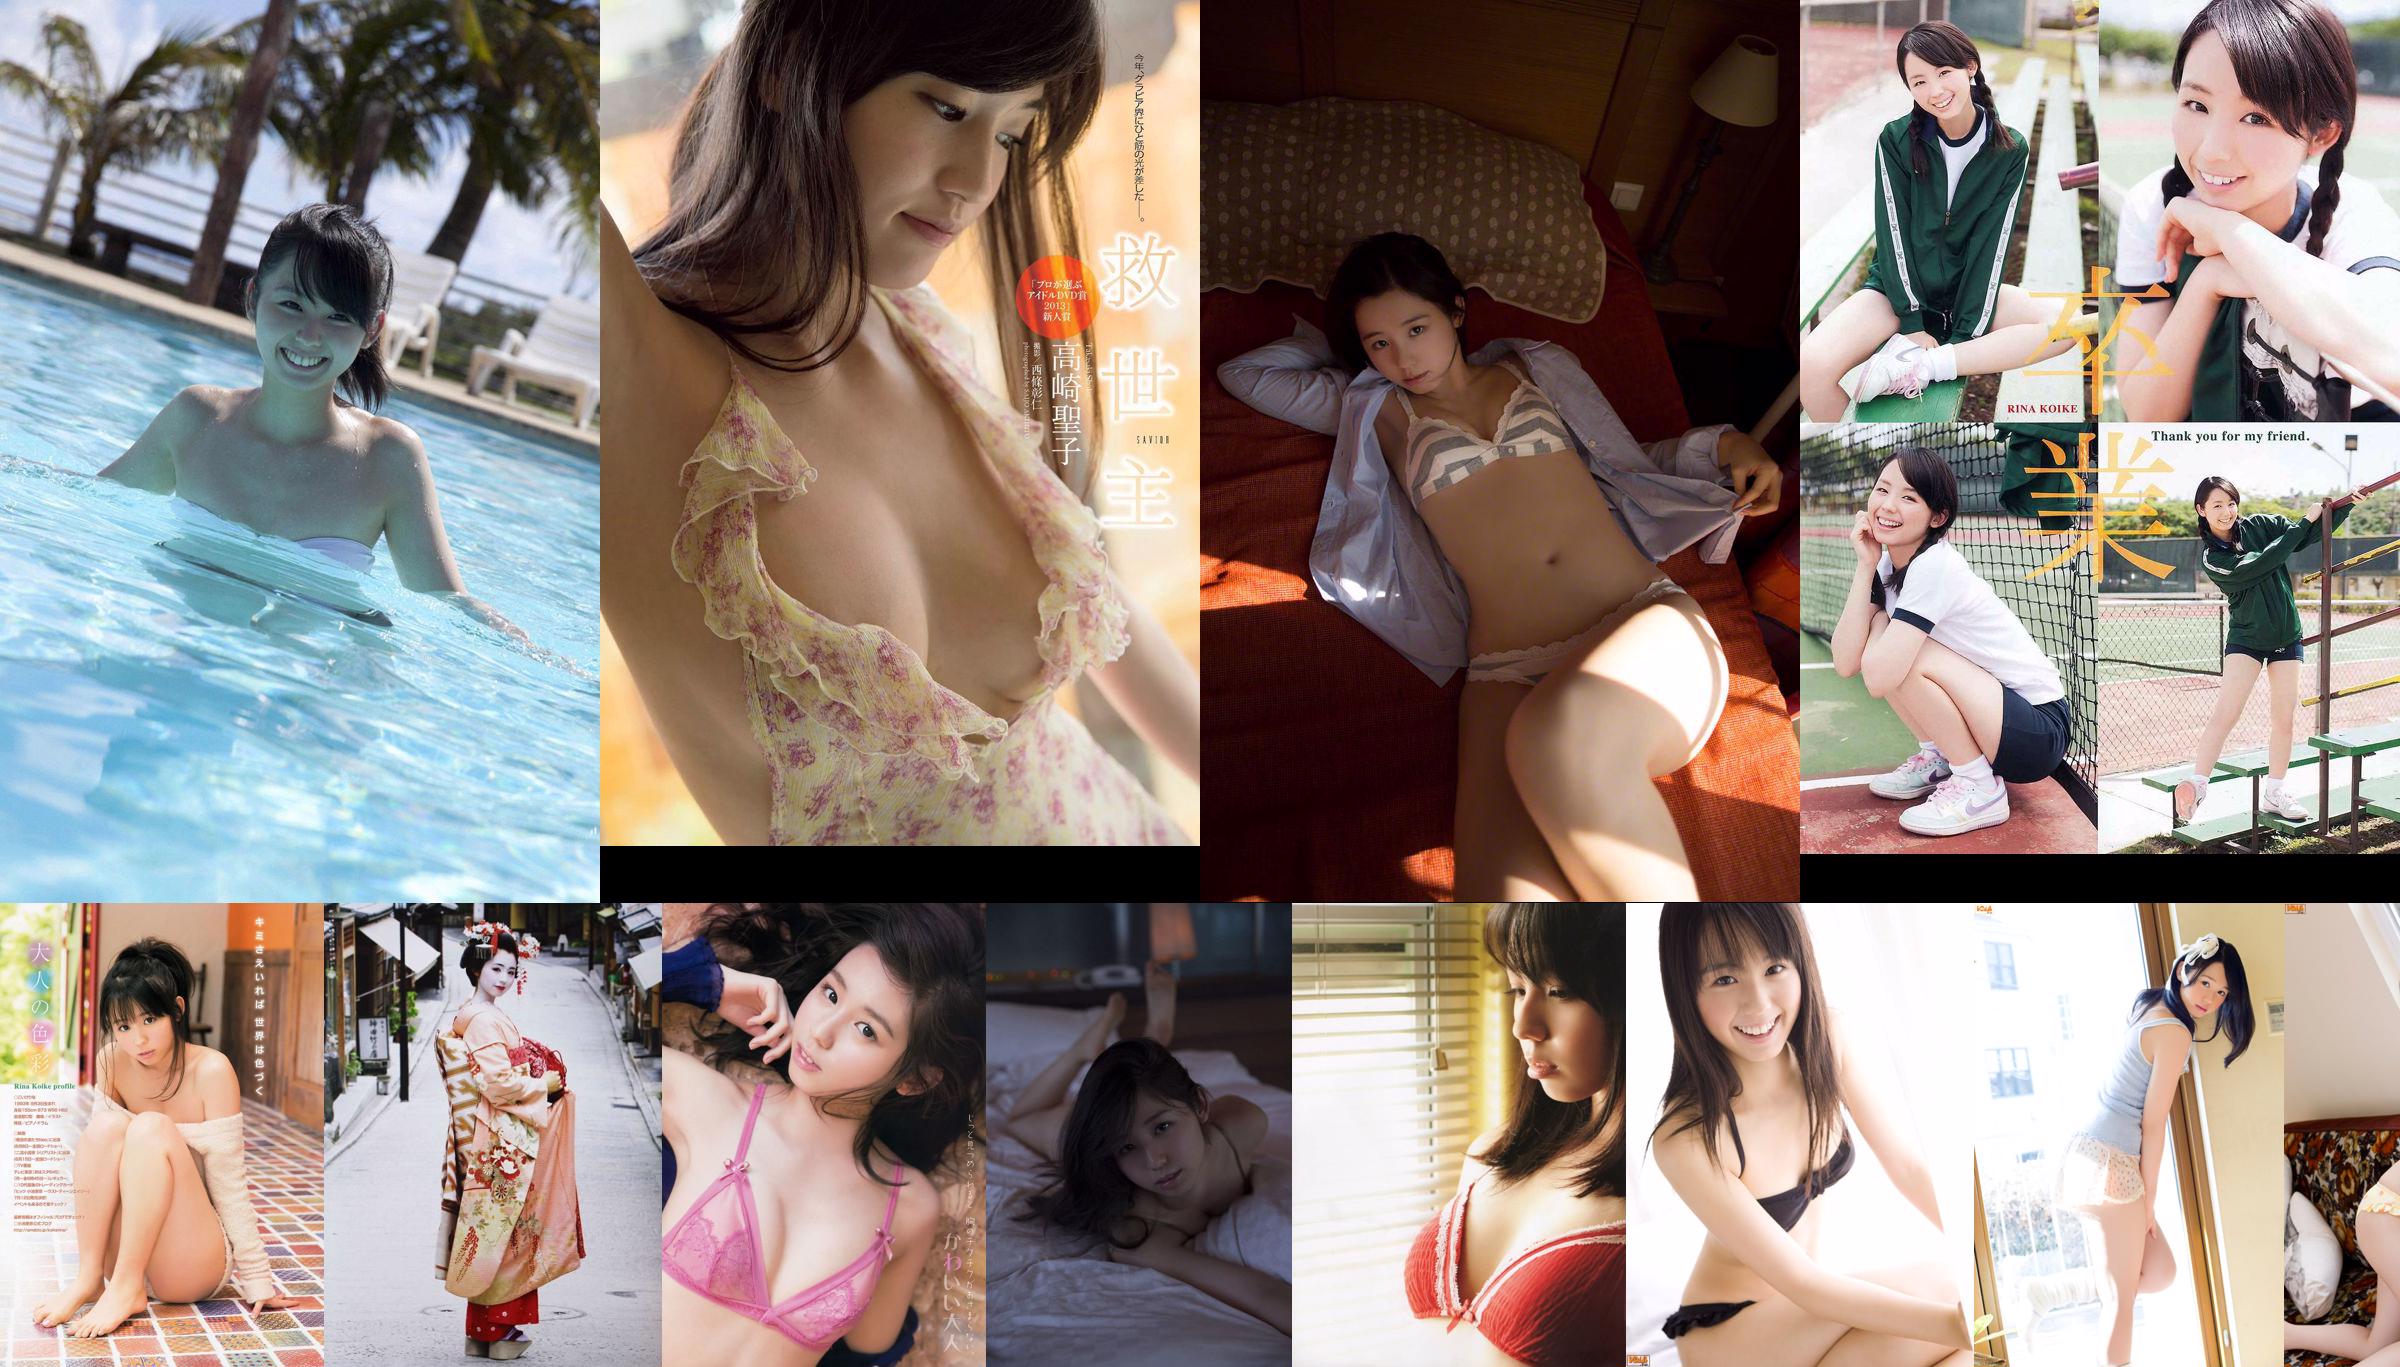 Rina Koike Mina Asakura Arisa Nishida [Lompatan Muda Mingguan] 2012 No. 13 Foto No.afa0f0 Halaman 2